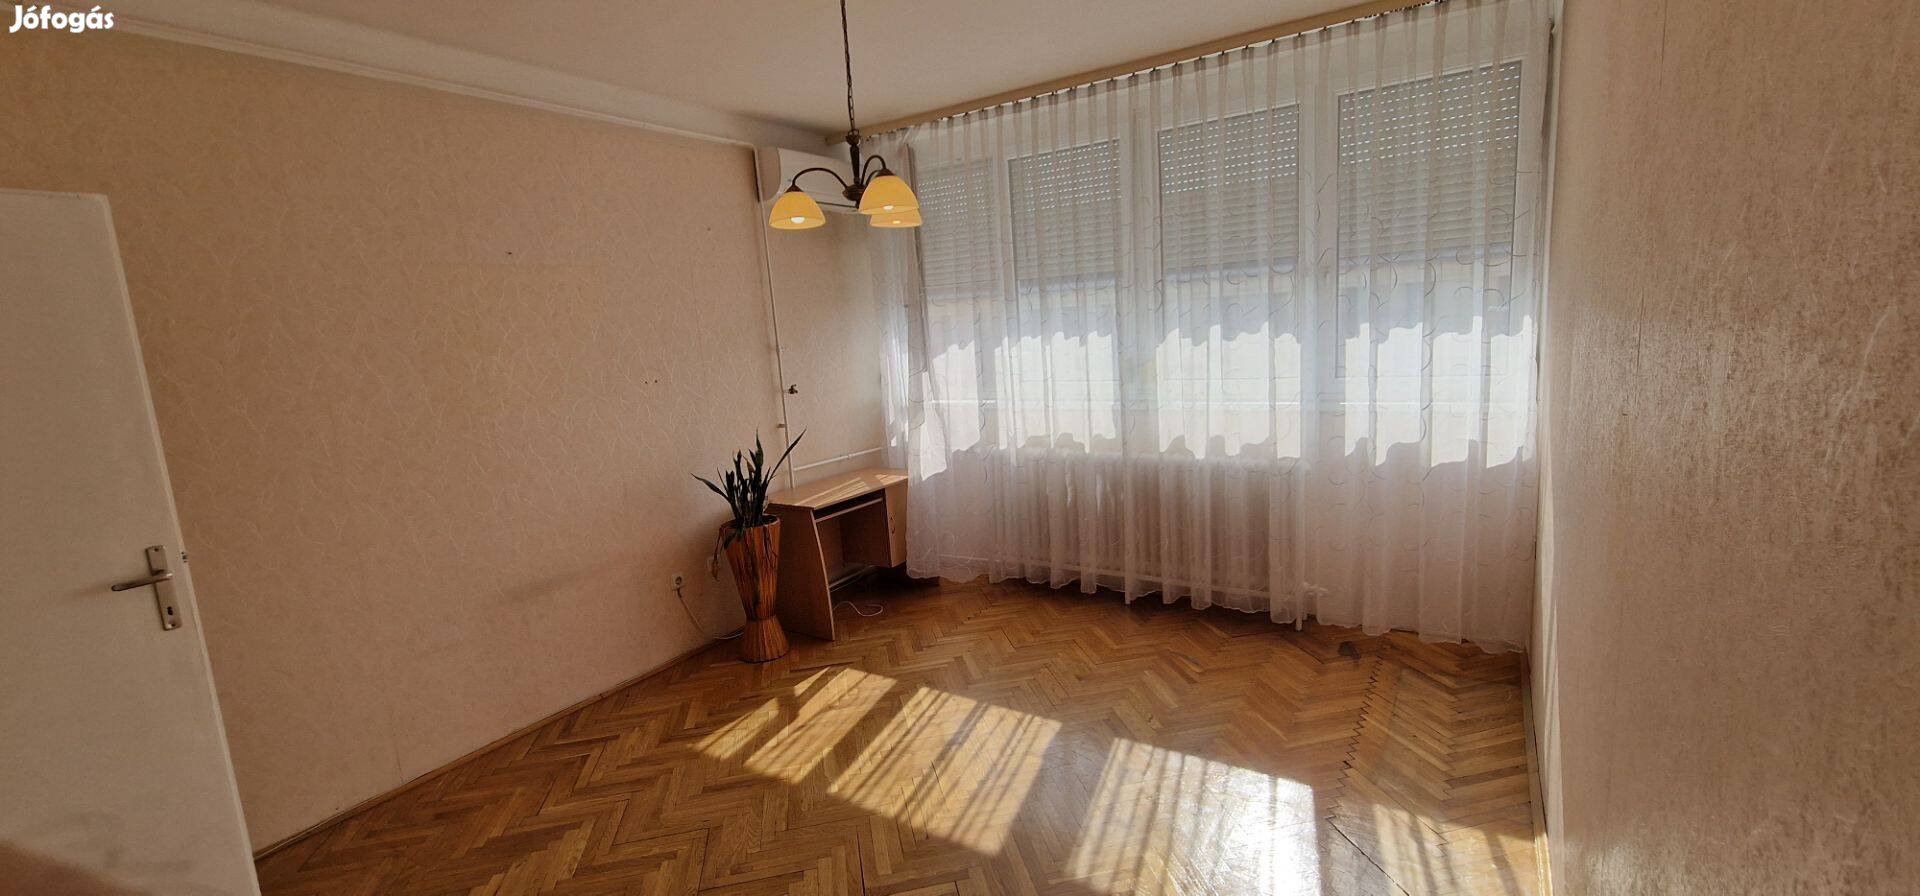 Eladó 58 m2-es 2 szobás erkélyes lakás Sárospatak belvárosában